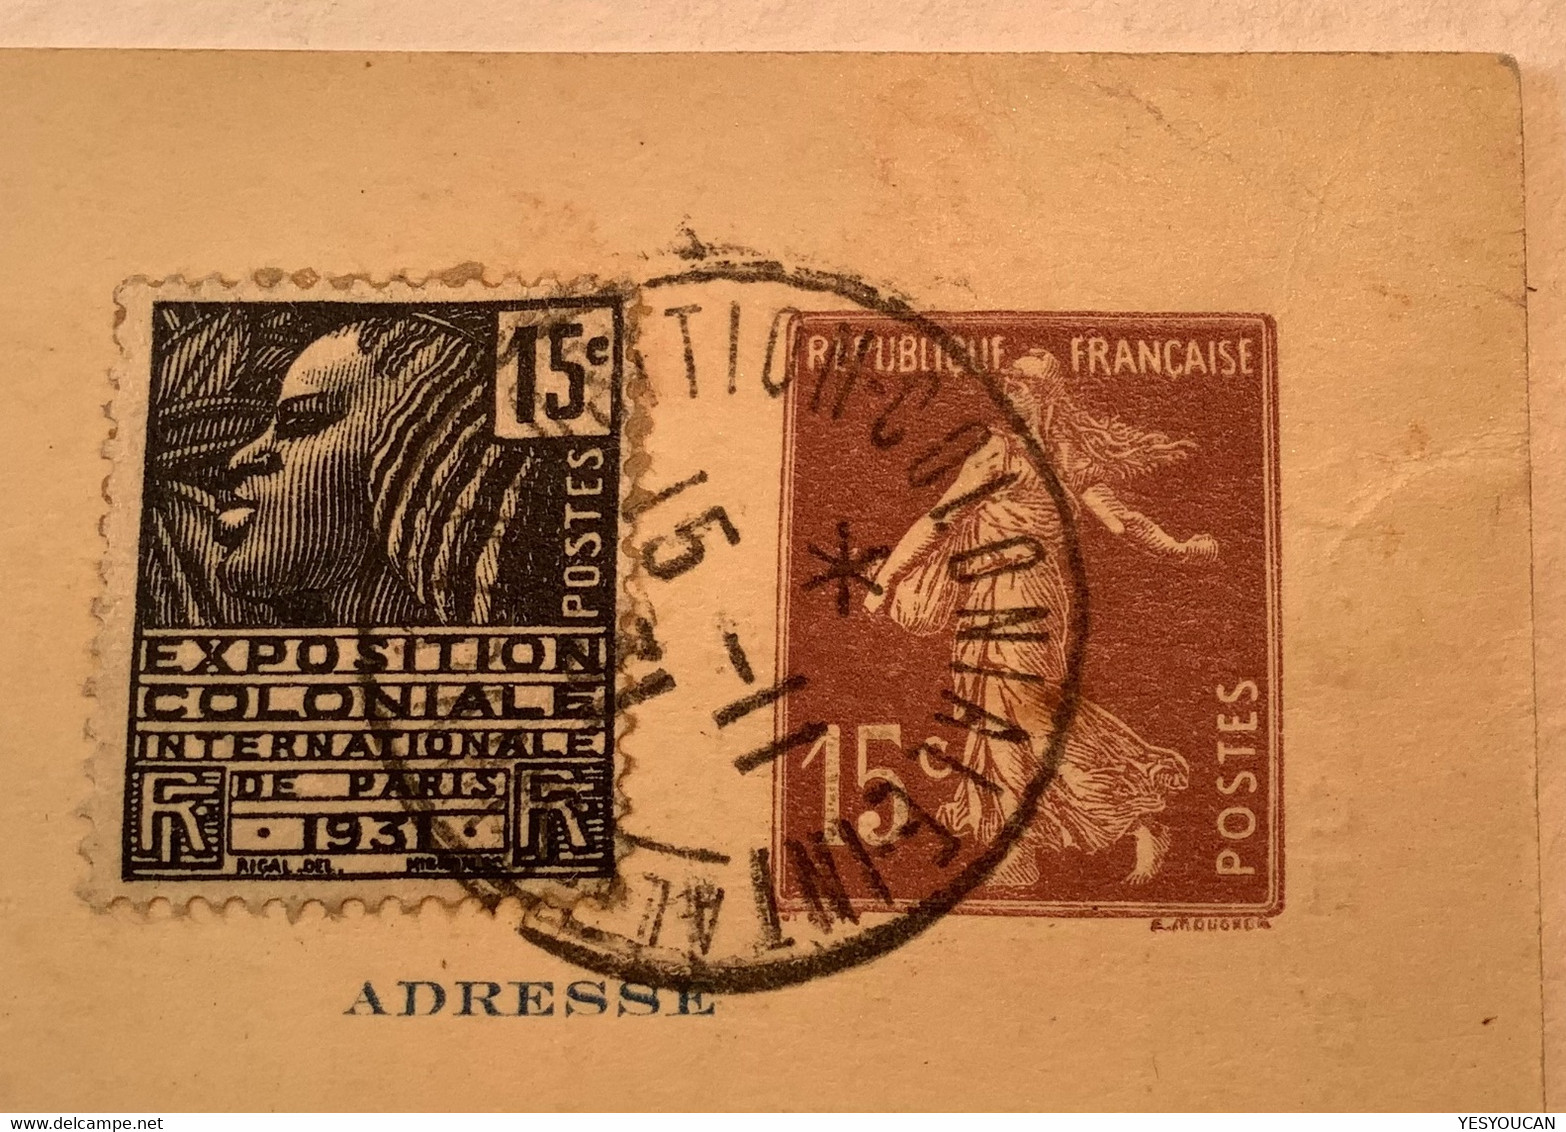 1931France Entier Postal15c Semeuse TSC EXPOSITION COLONIALE INTERNATIONALE PARIS#4-AEF AFRIQUE OCCIDENTALE FRANÇAISE - Standard- Und TSC-AK (vor 1995)